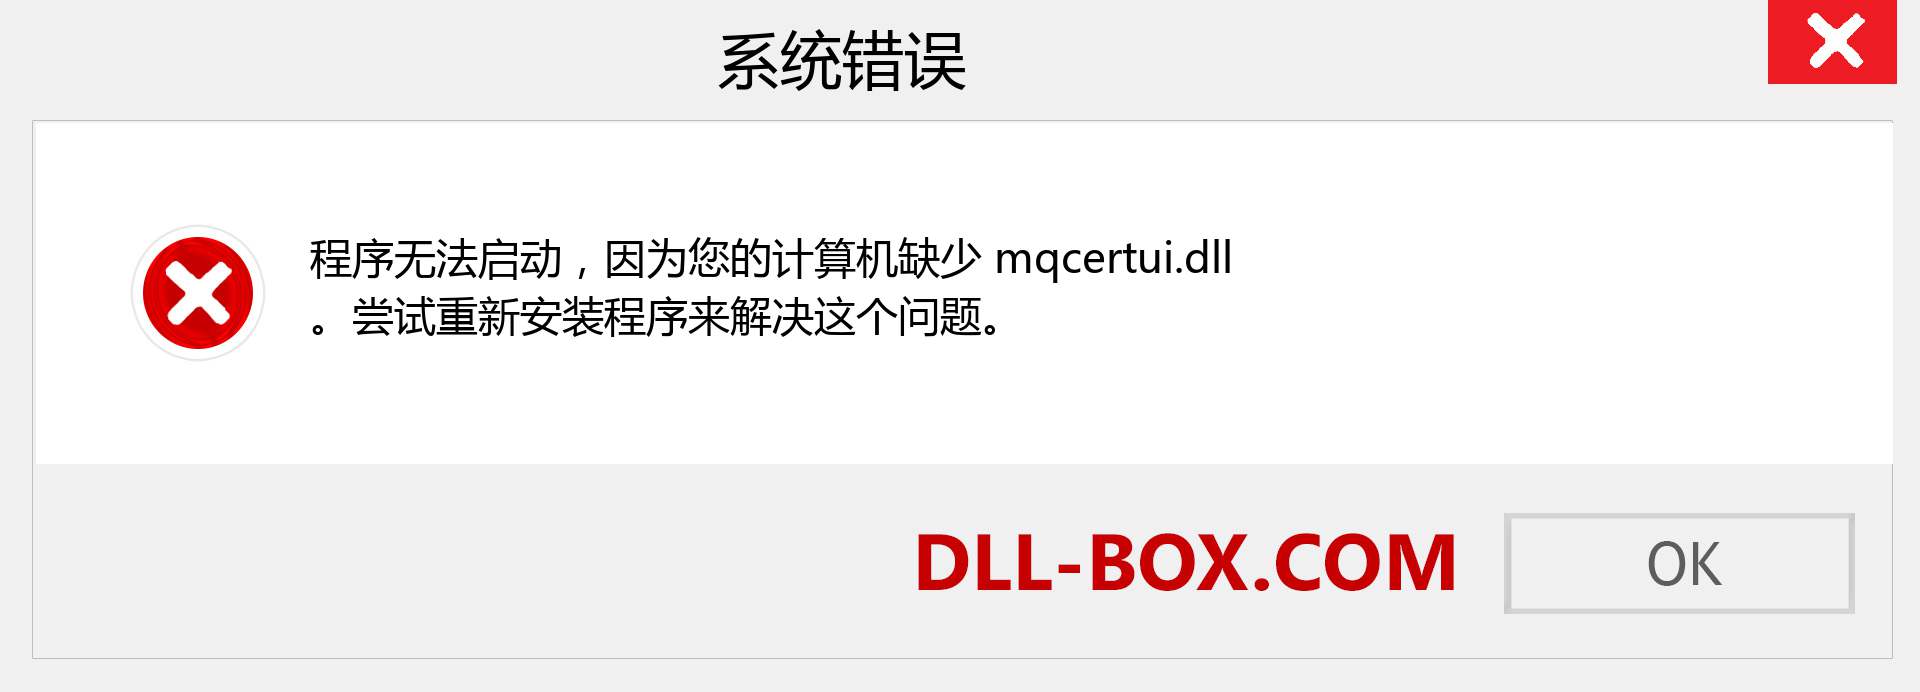 mqcertui.dll 文件丢失？。 适用于 Windows 7、8、10 的下载 - 修复 Windows、照片、图像上的 mqcertui dll 丢失错误